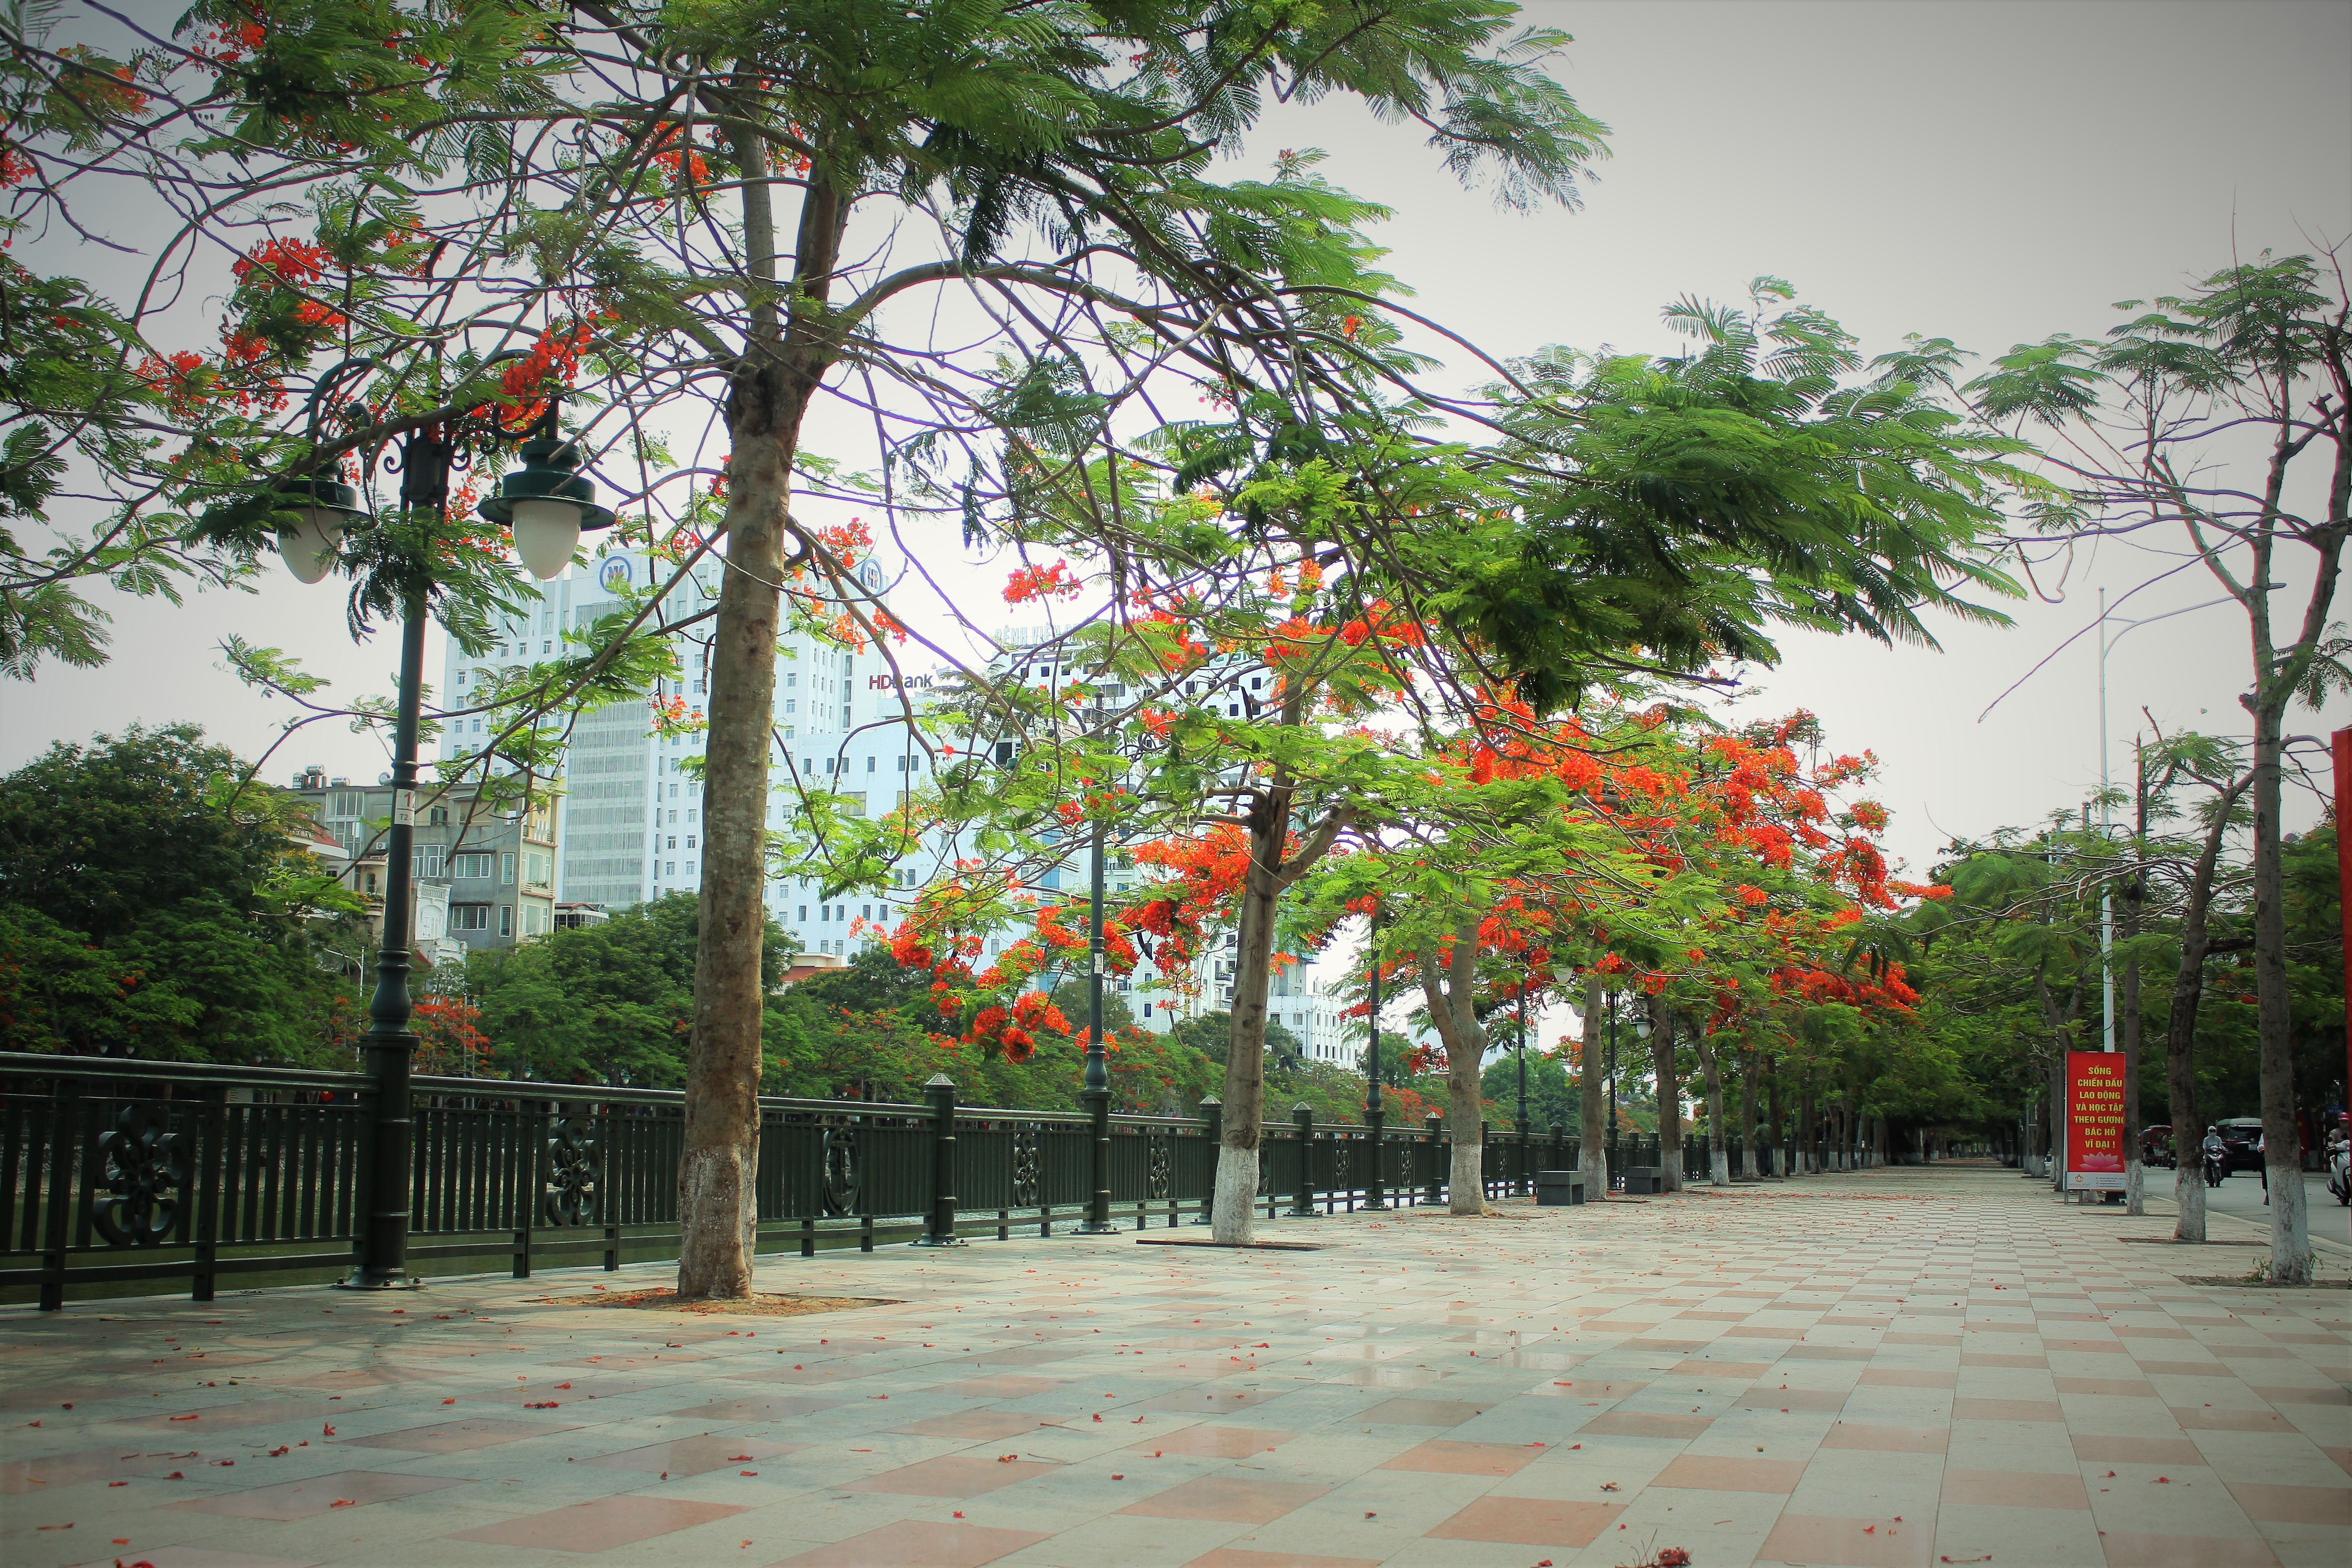 Người dân thành phố hoa phượng đỏ ủng hộ lựa chọn giải pháp bảo đảm an toàn nhưng không “lạm sát” cây xanh - Ảnh 11.